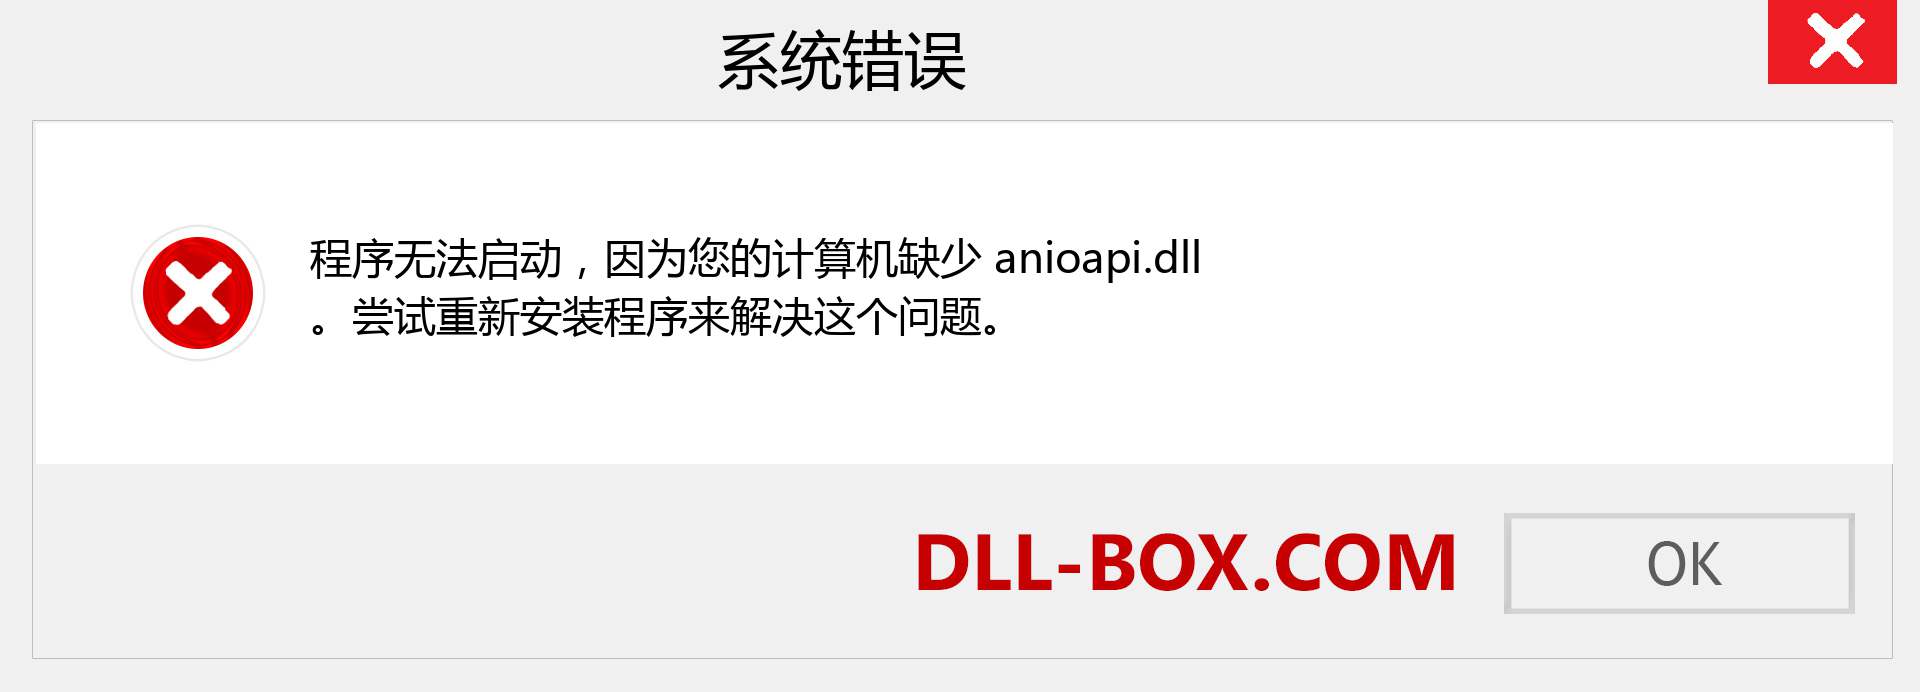 anioapi.dll 文件丢失？。 适用于 Windows 7、8、10 的下载 - 修复 Windows、照片、图像上的 anioapi dll 丢失错误